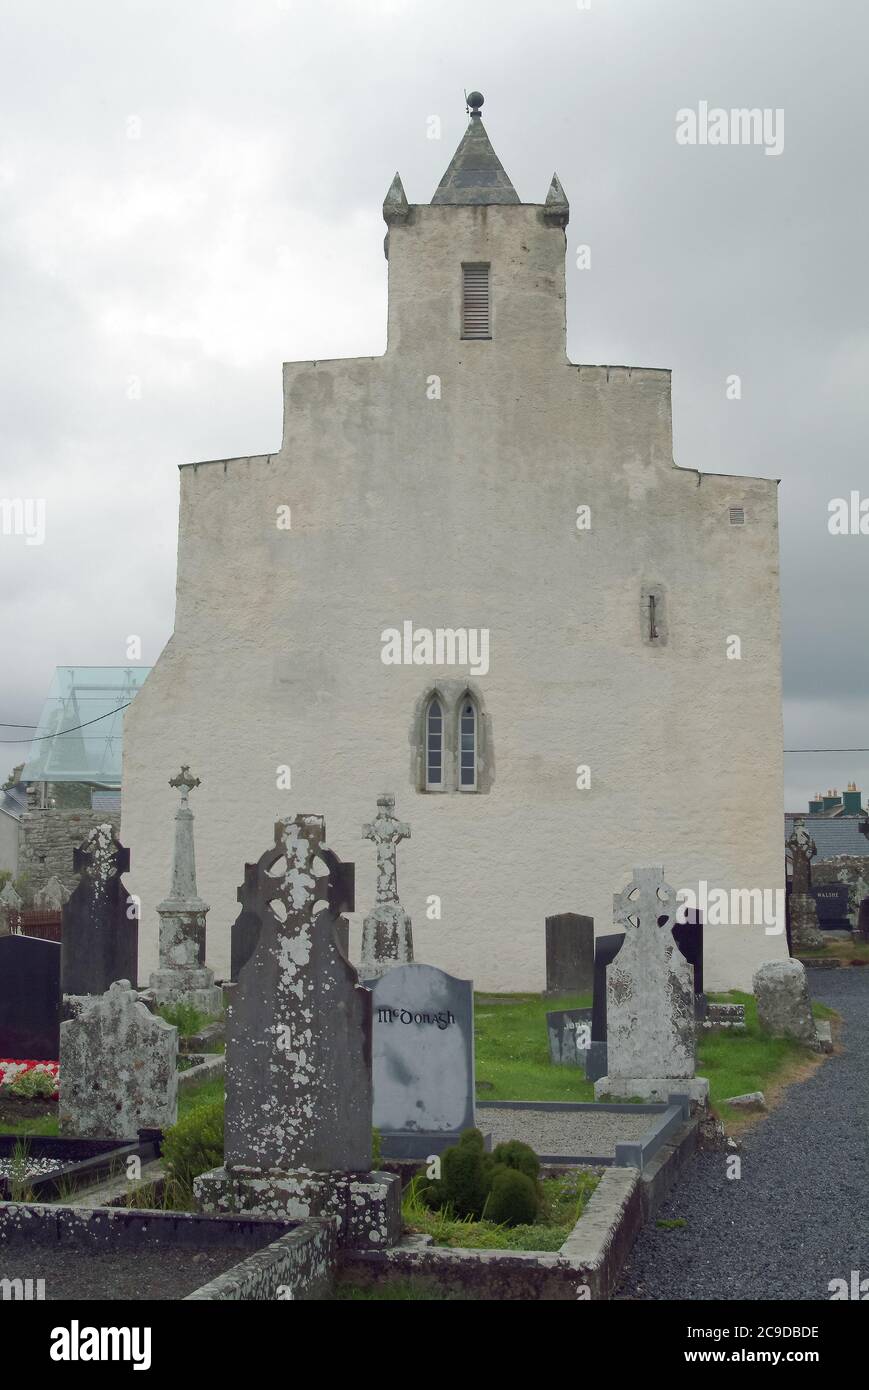 Cathédrale de Kilfenora, cathédrale Saint-Fachtnan, Kilfenora, Cill Fhionnúrach, Comté de Clare, Irlande, Éire, Irland, Írország, Europe, Monument national Banque D'Images